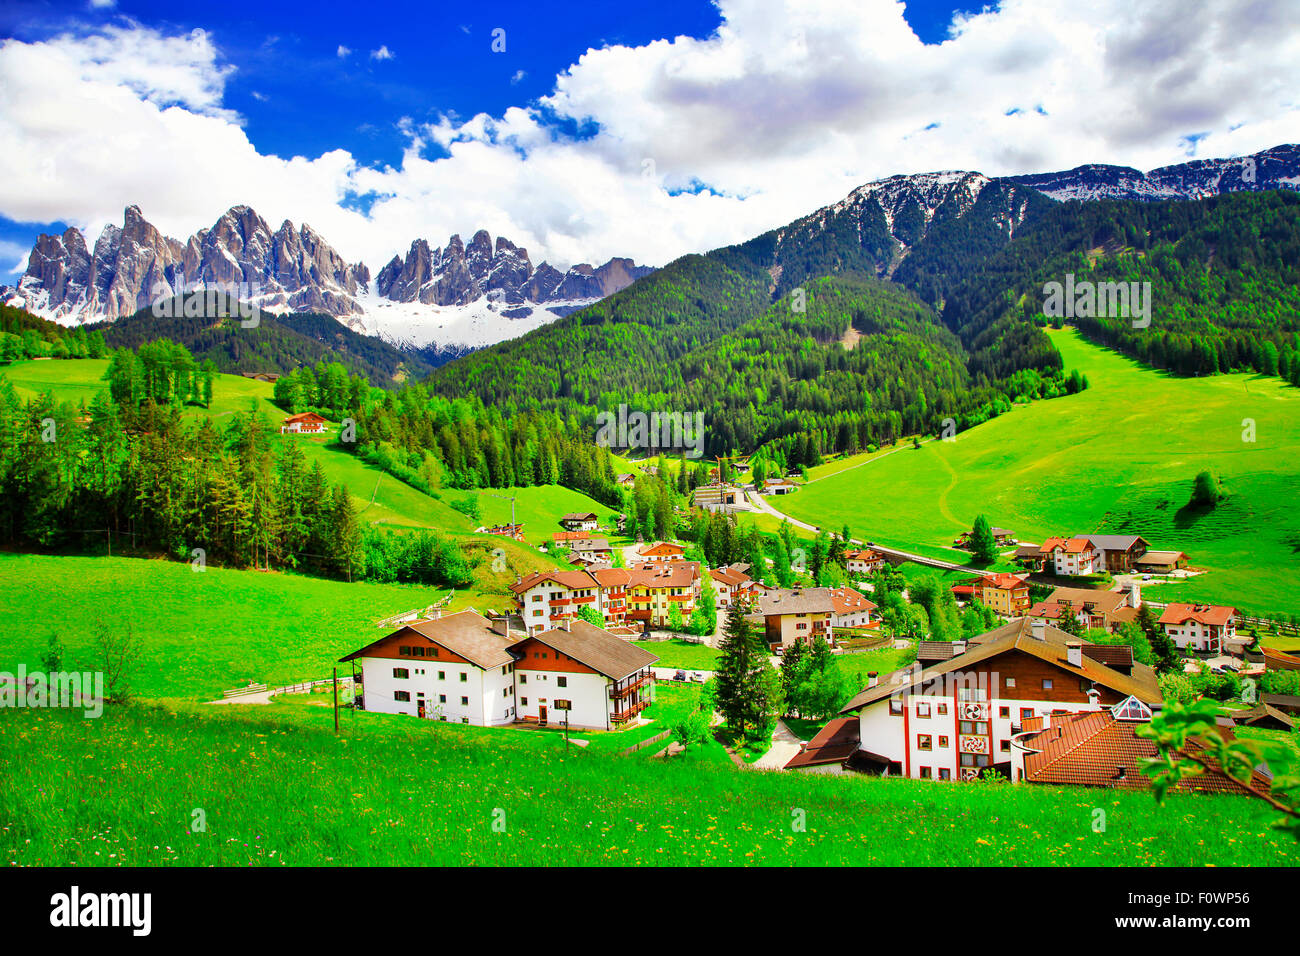 Val di Funes campagne dans les montagnes des Dolomites, Italie du Nord Banque D'Images